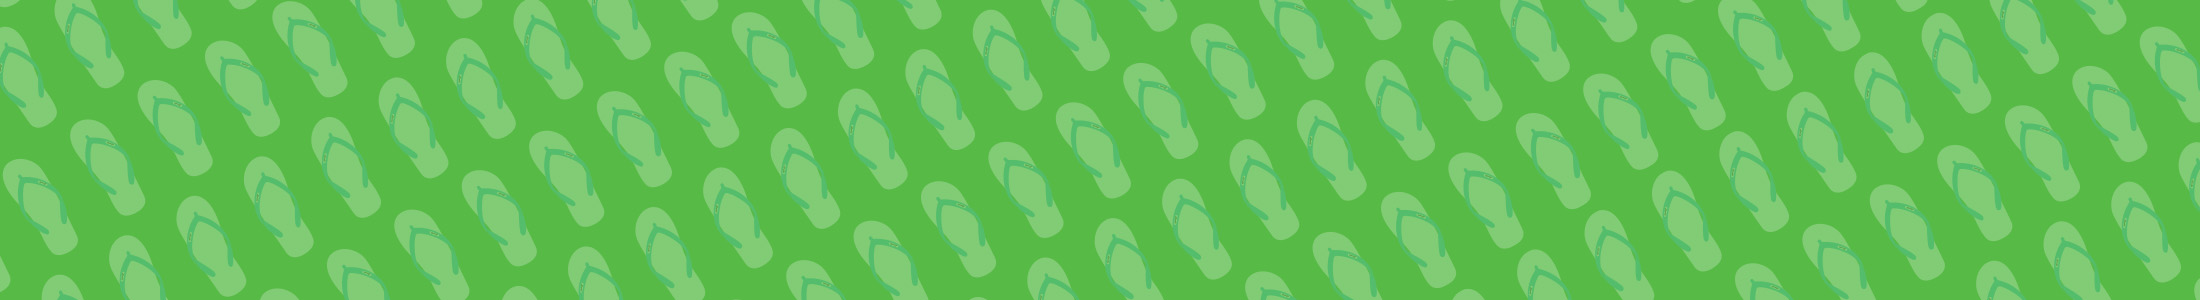 bg green slippers